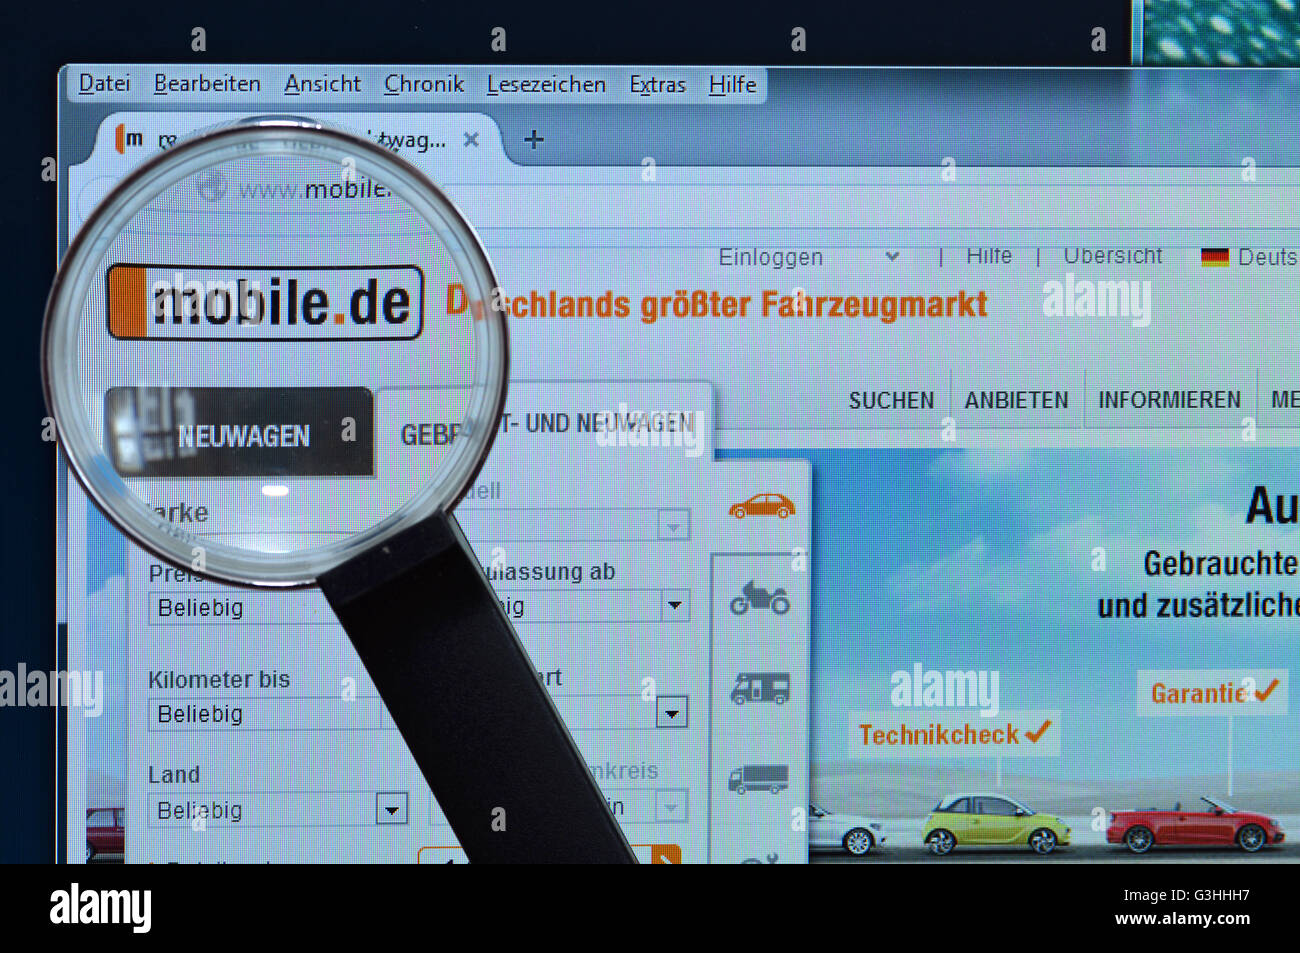 Mobile.de, homepage, Bildschirm, Lupe Foto Stock